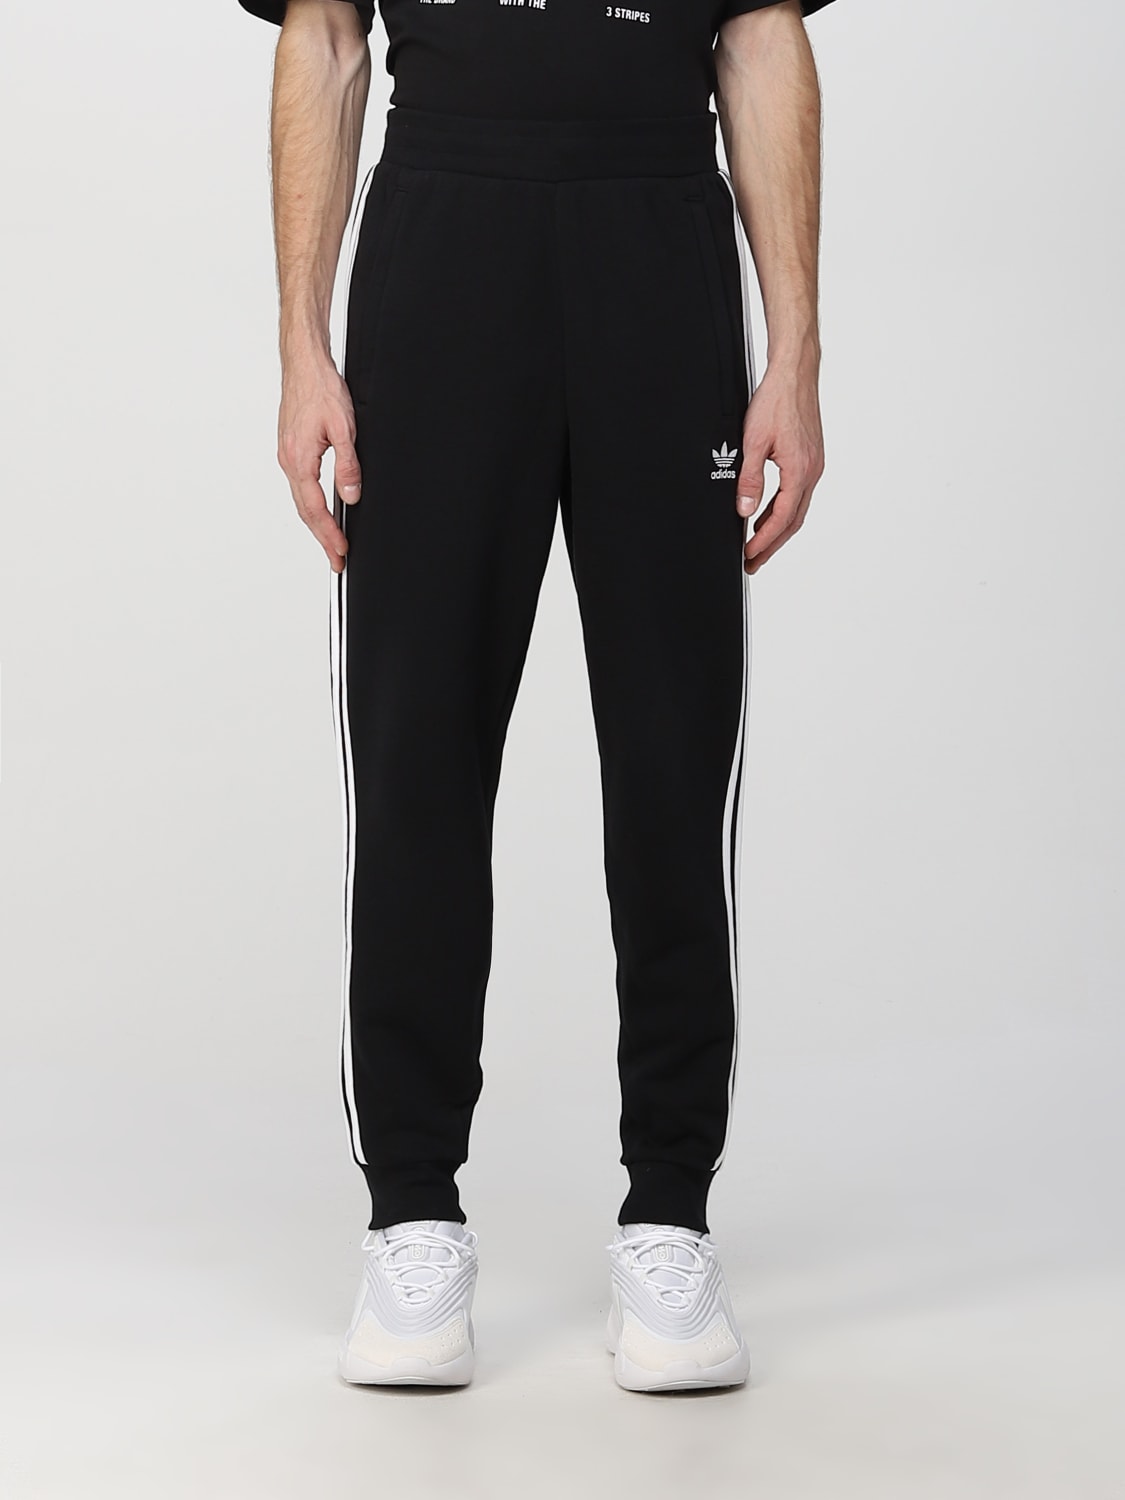 ADIDAS ORIGINALS: pants for man - Black | Adidas Originals pants GN3458 ...